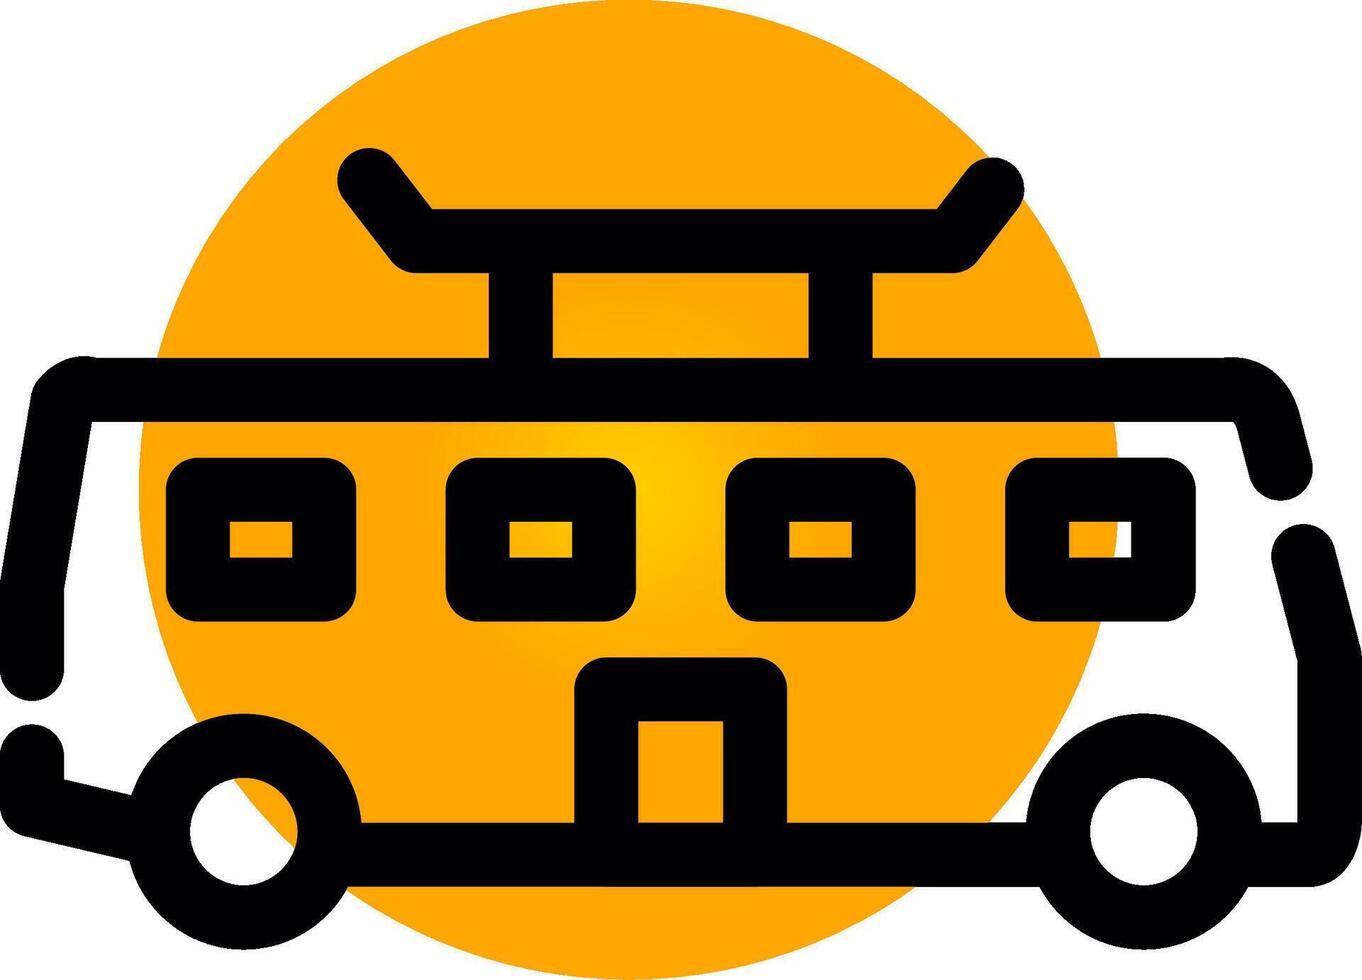 Tramcar Creative Icon Design vector